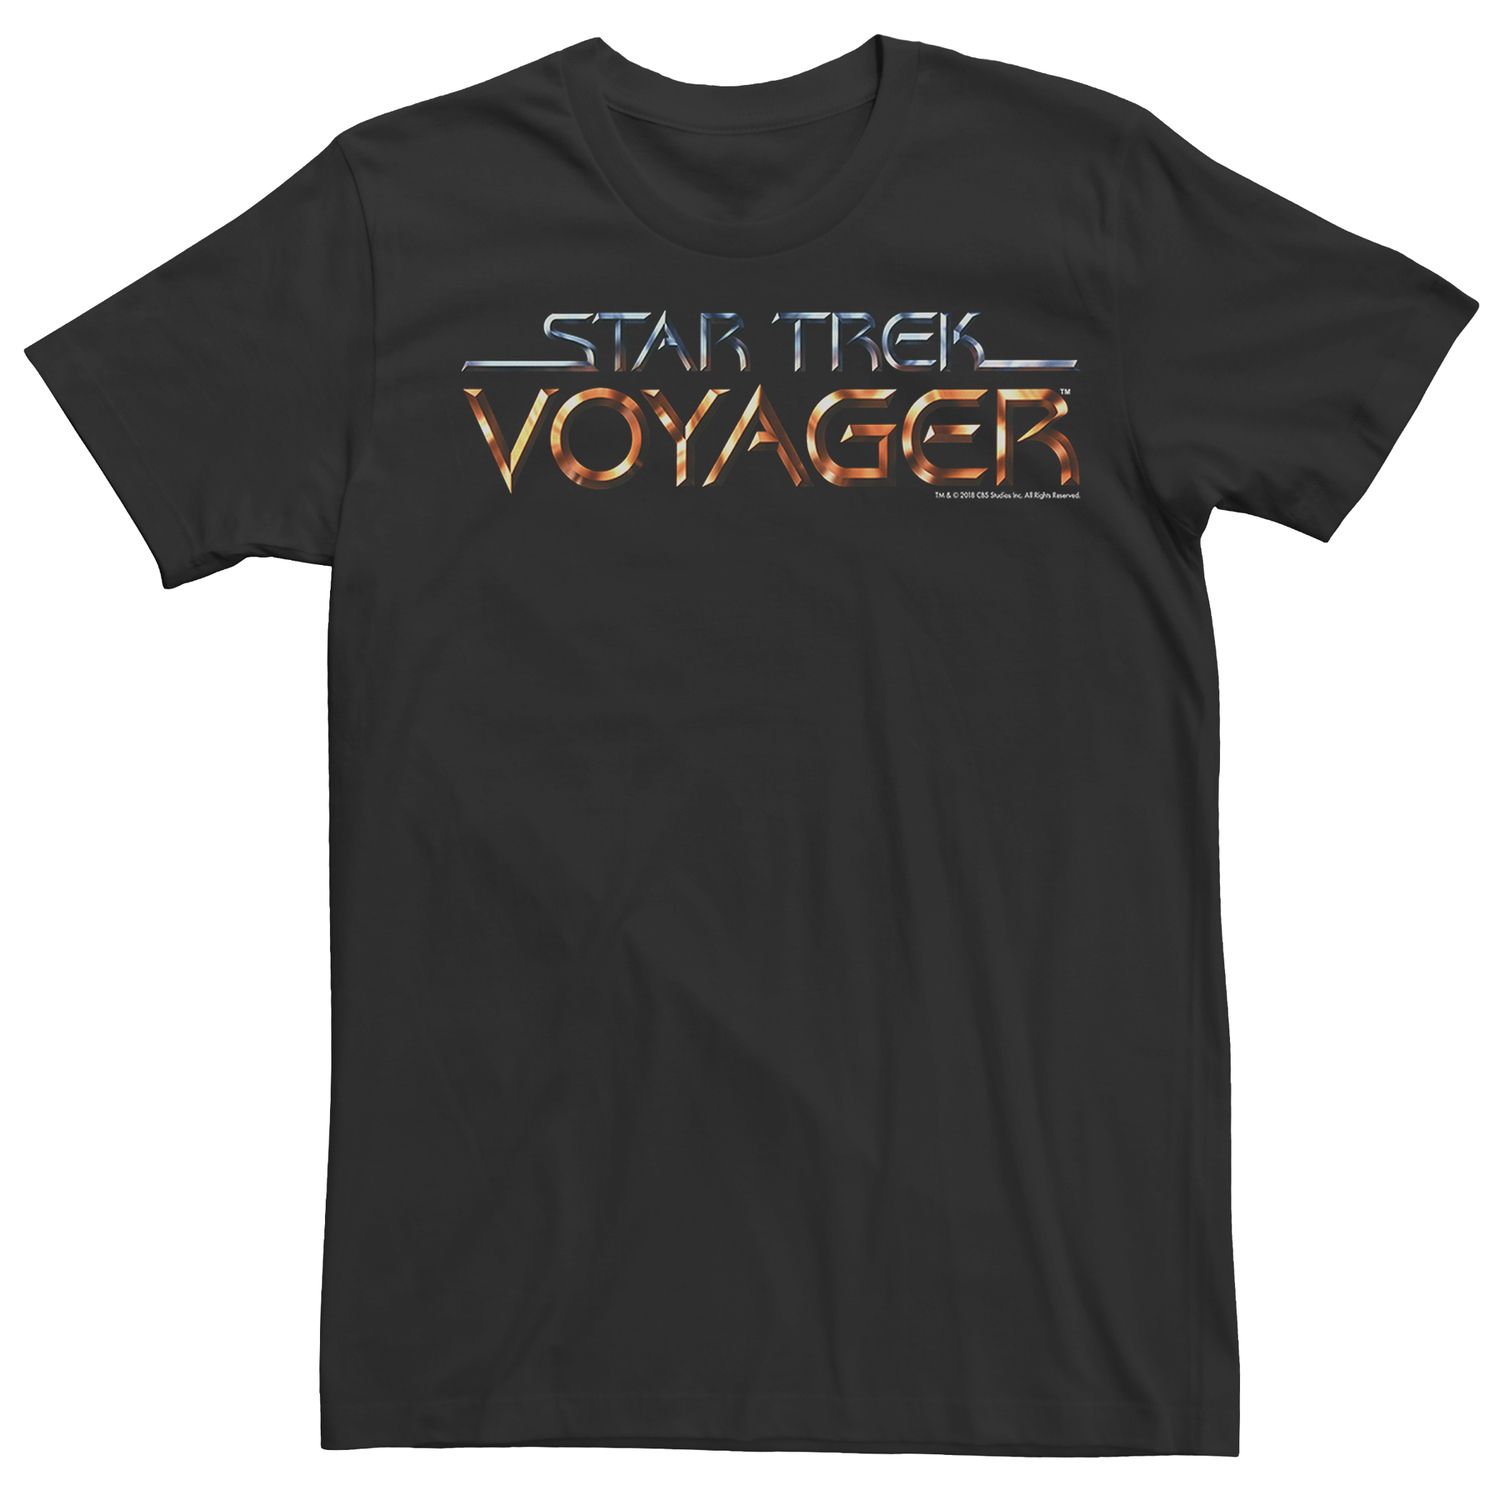 Мужская футболка с логотипом Star Trek Voyager Licensed Character